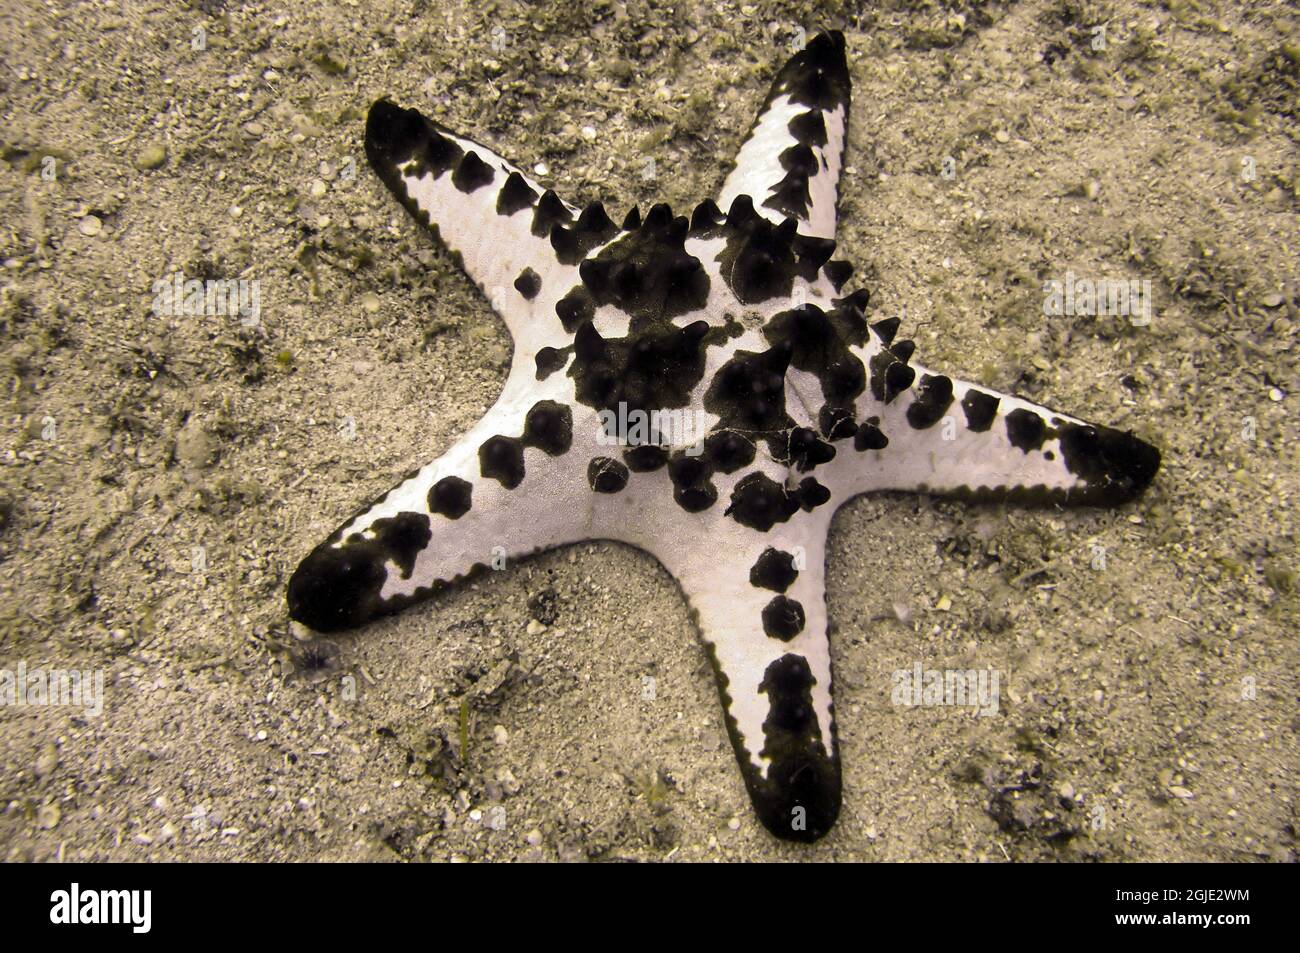 Seastar (Pentaceraster) auf dem Boden im philippinischen Meer 16. Dezember 2010 Stockfoto